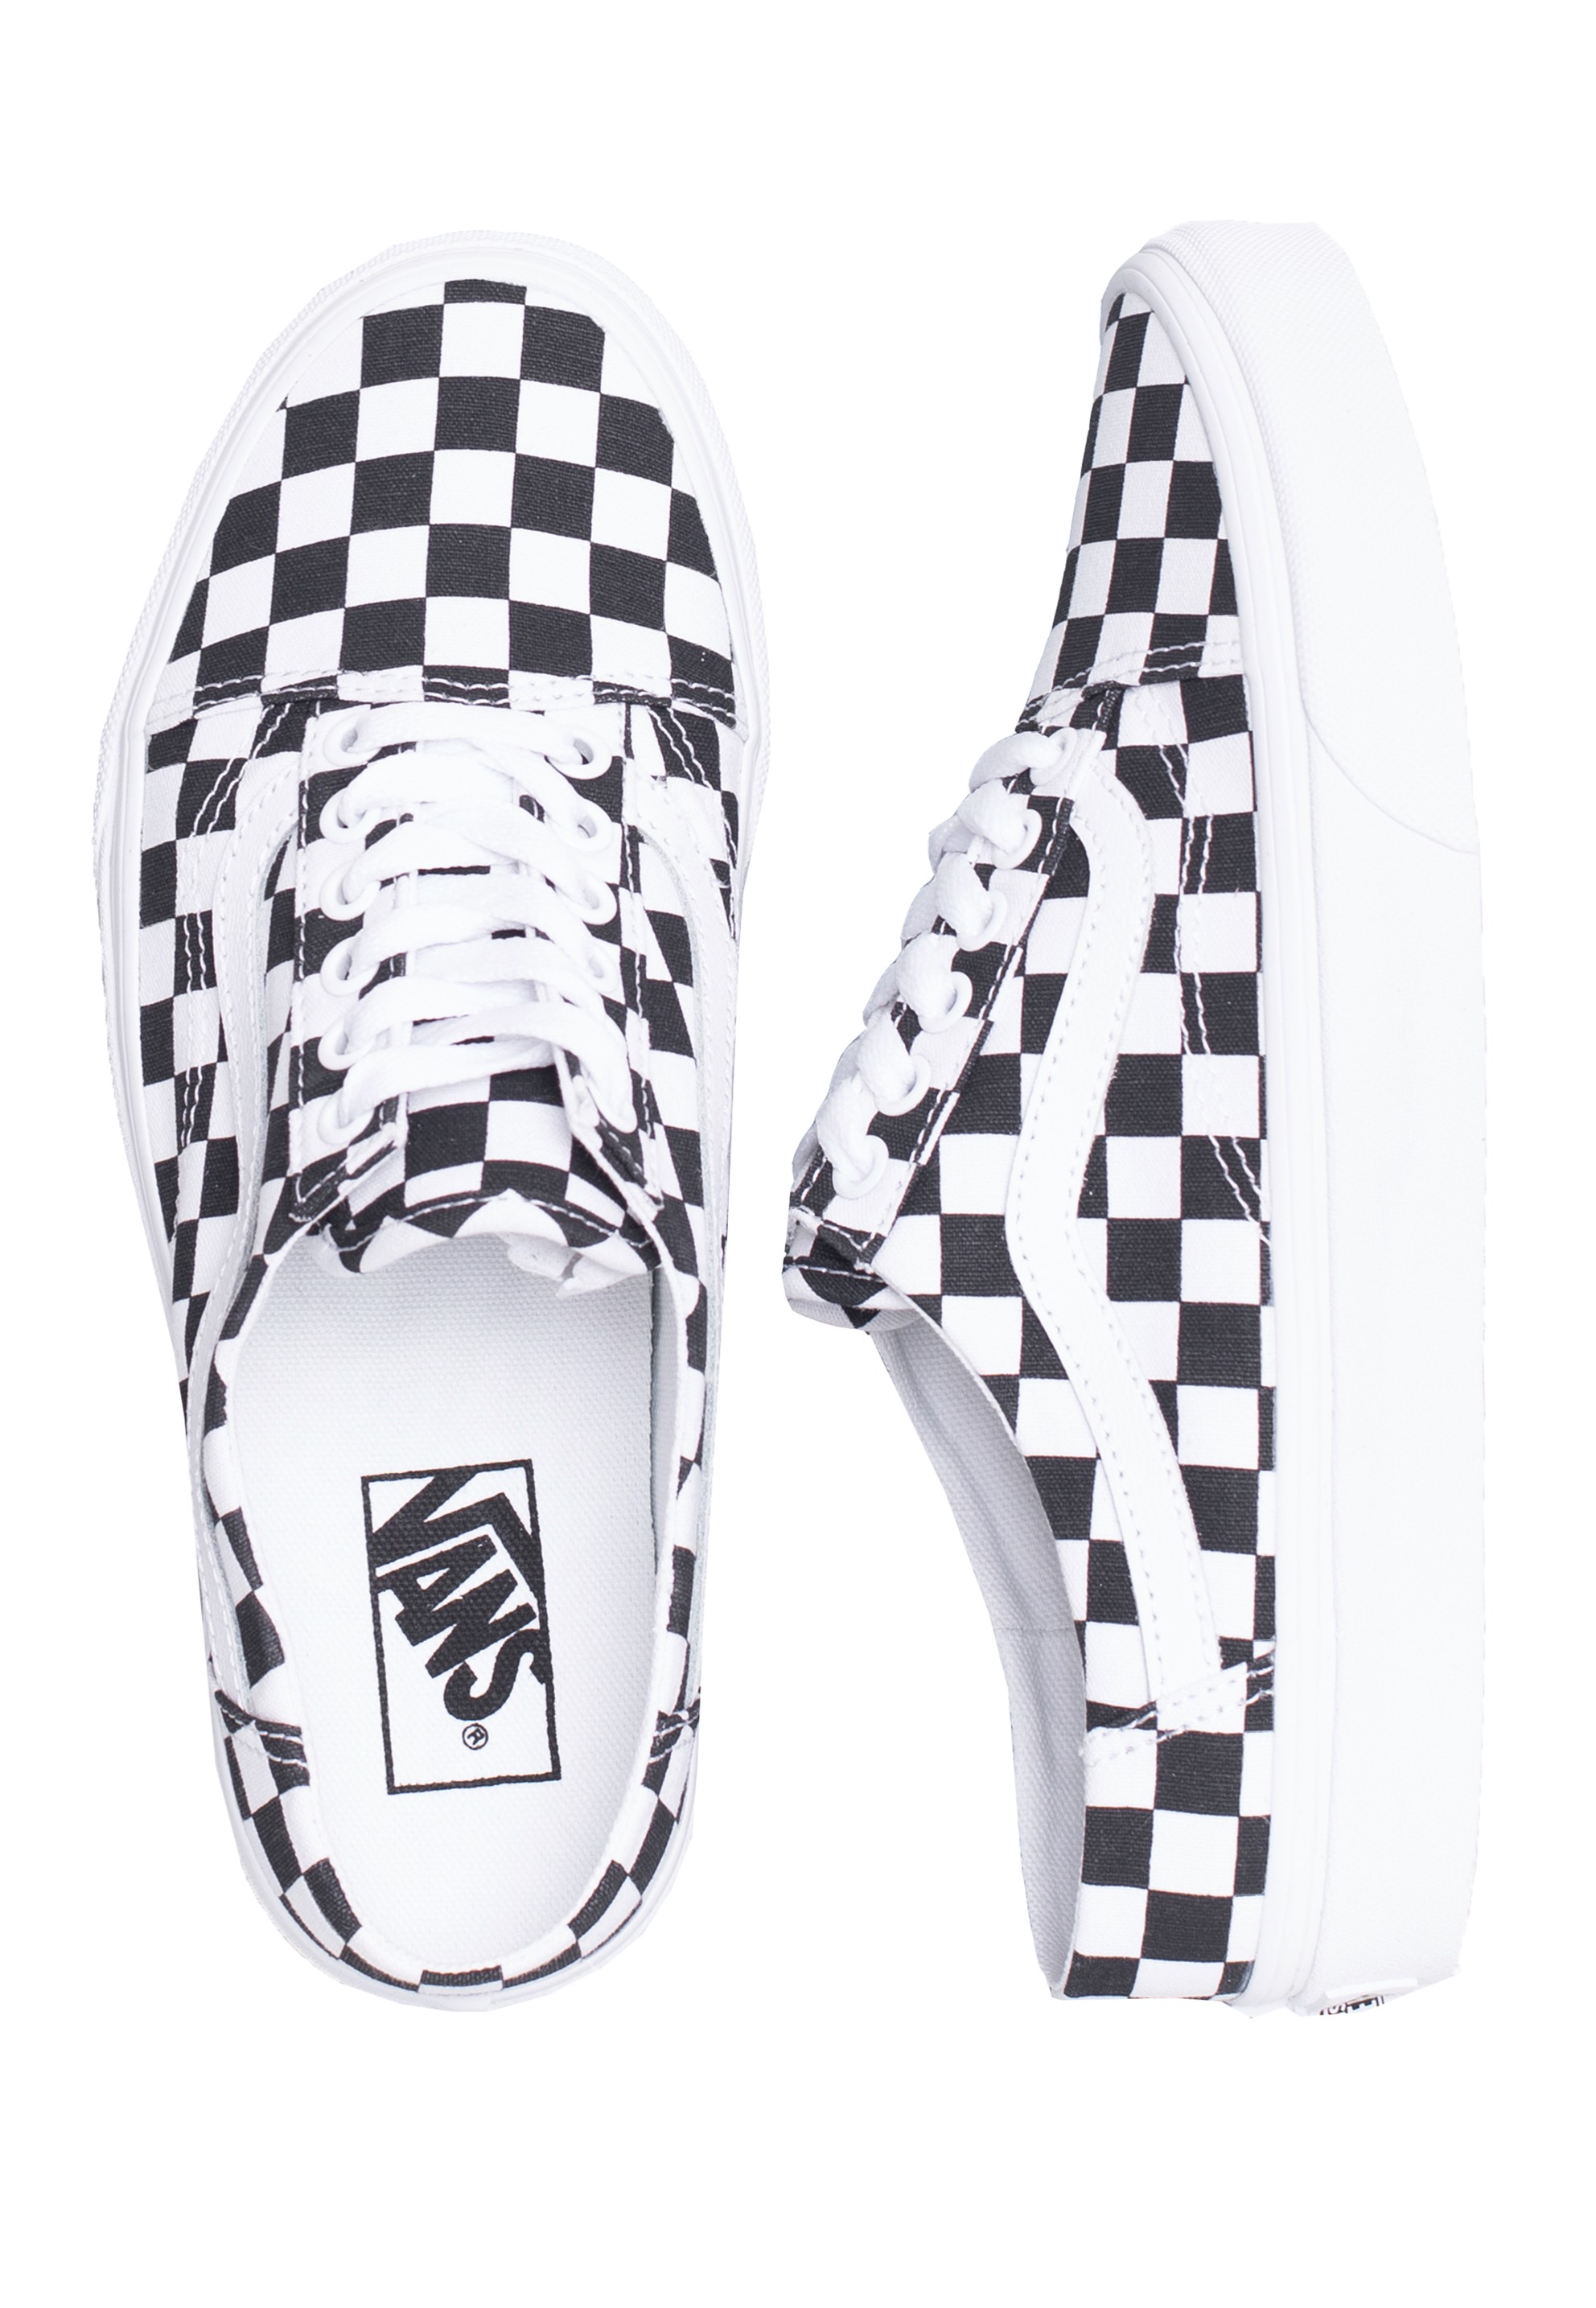 Vans - Old Skool Mule (Checkerboard) Black/True White - Skateschuhe